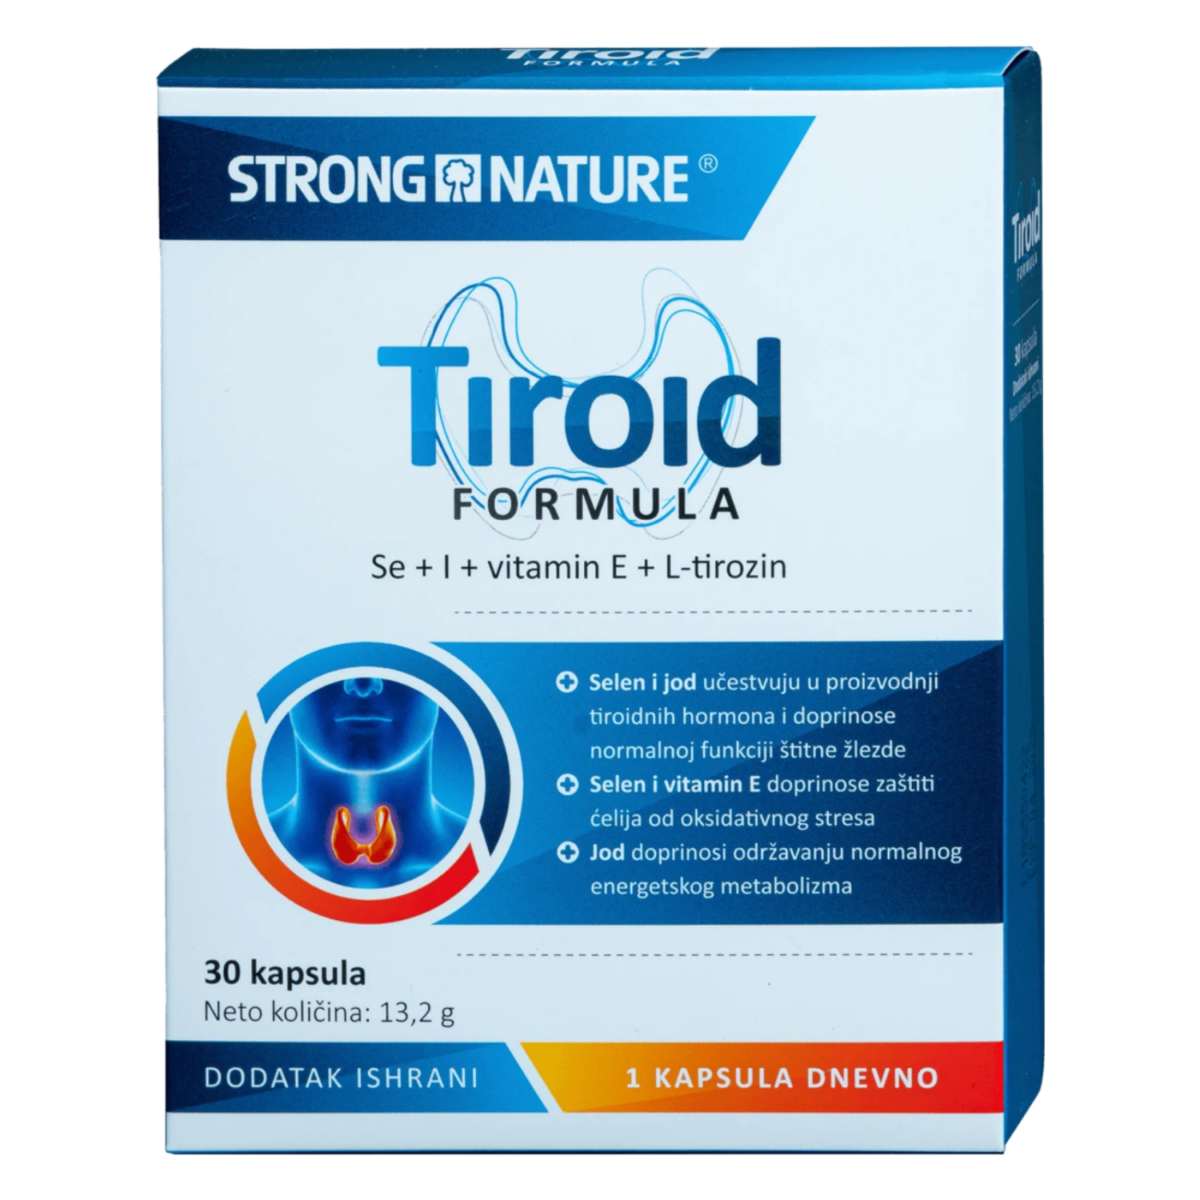 Strong Nature Tiroid Formula 30 kapsula